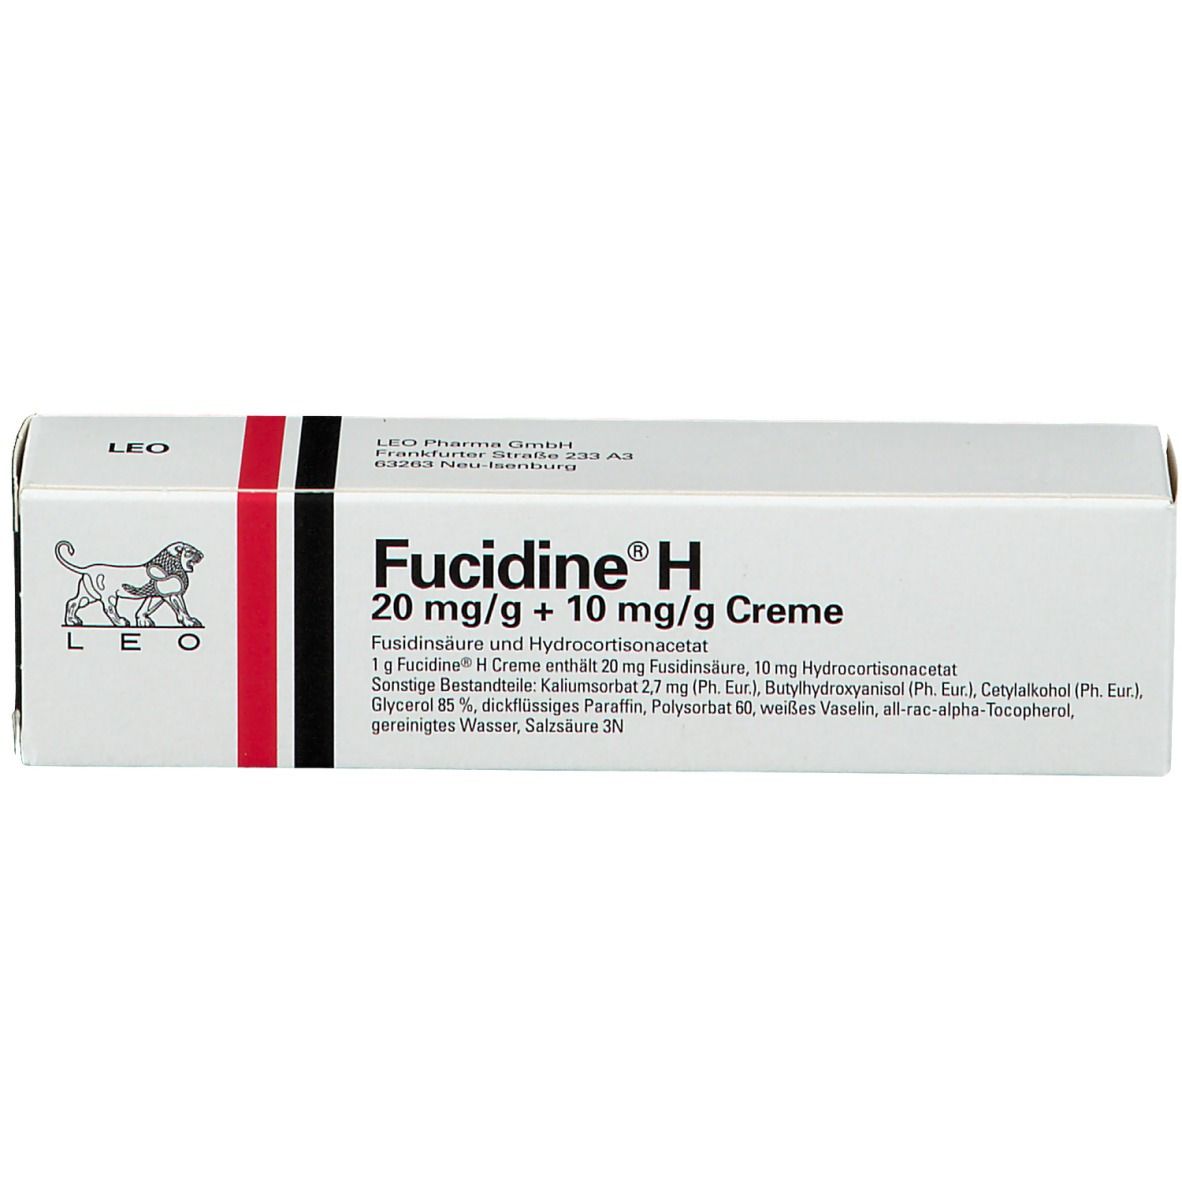 Fucidine® H 20 mg/g + 10 mg/g Creme